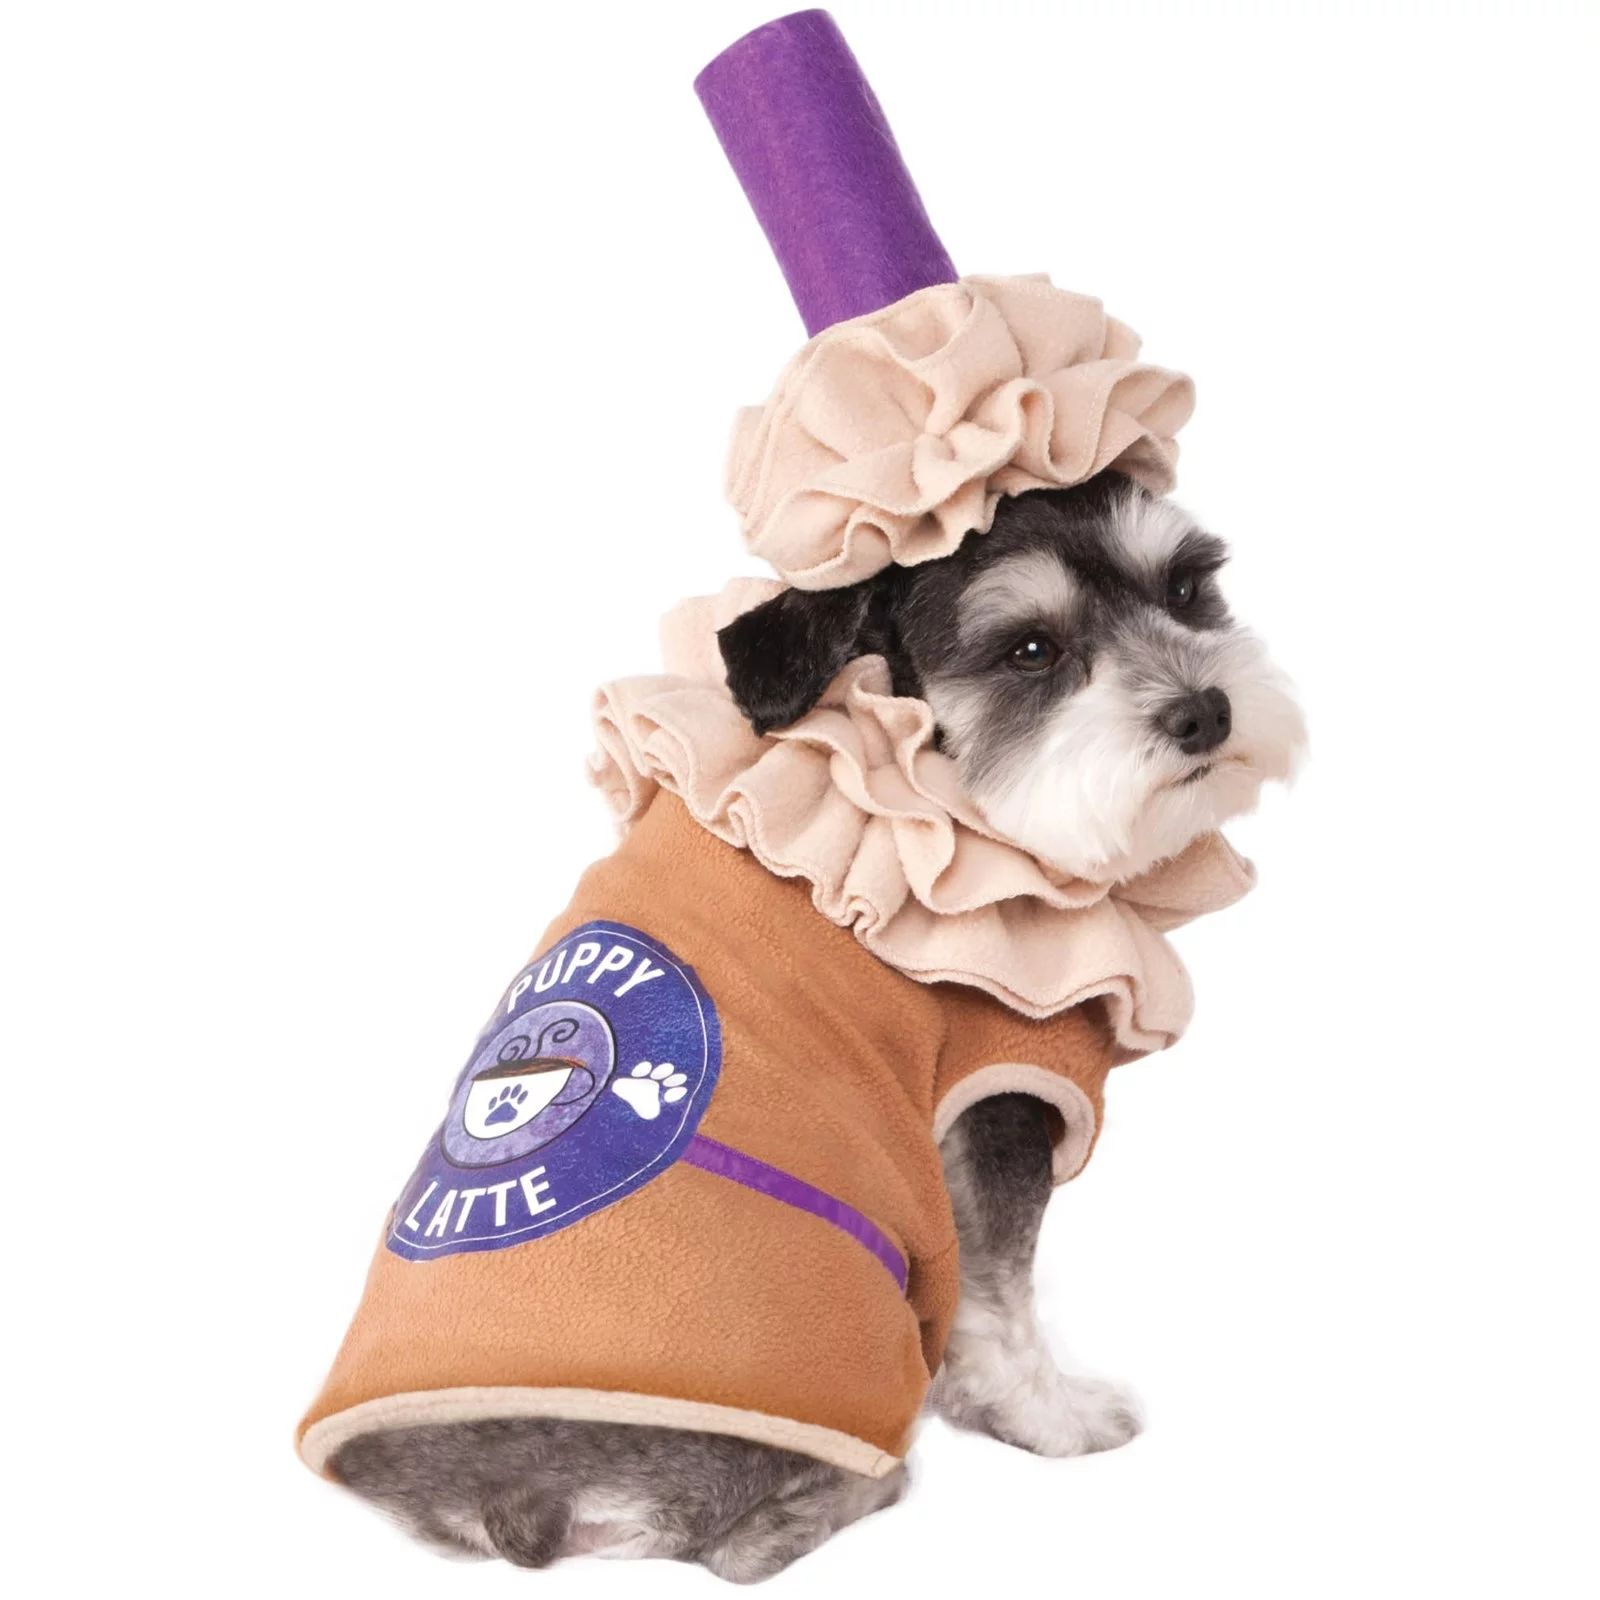 Puppy Latte Pet Halloween Costume - Walmart.com | Walmart (US)